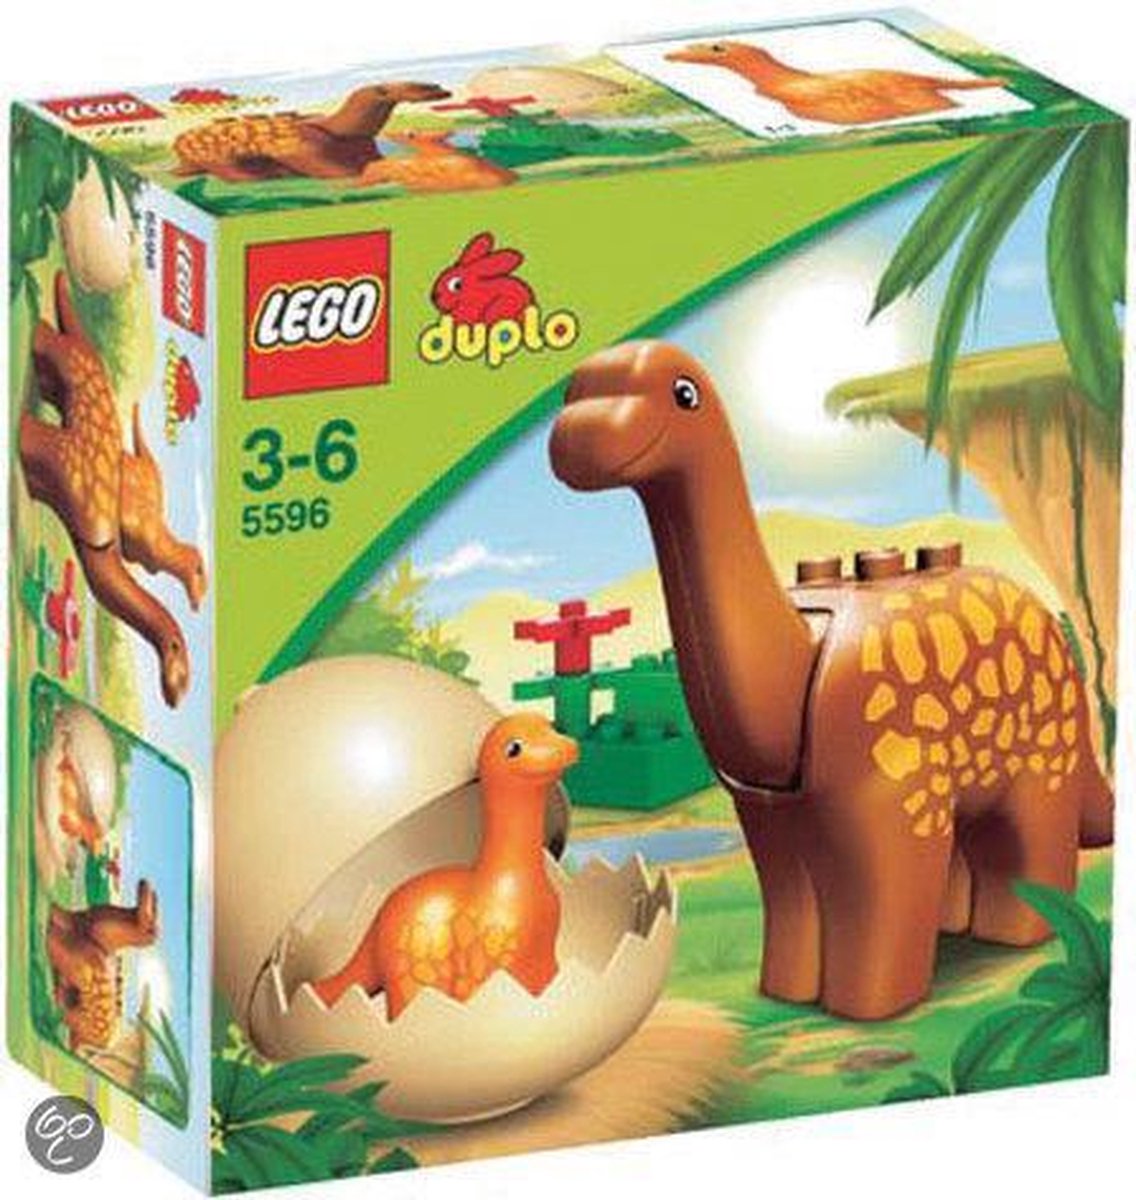 LEGO Duplo Dino - 5596 |